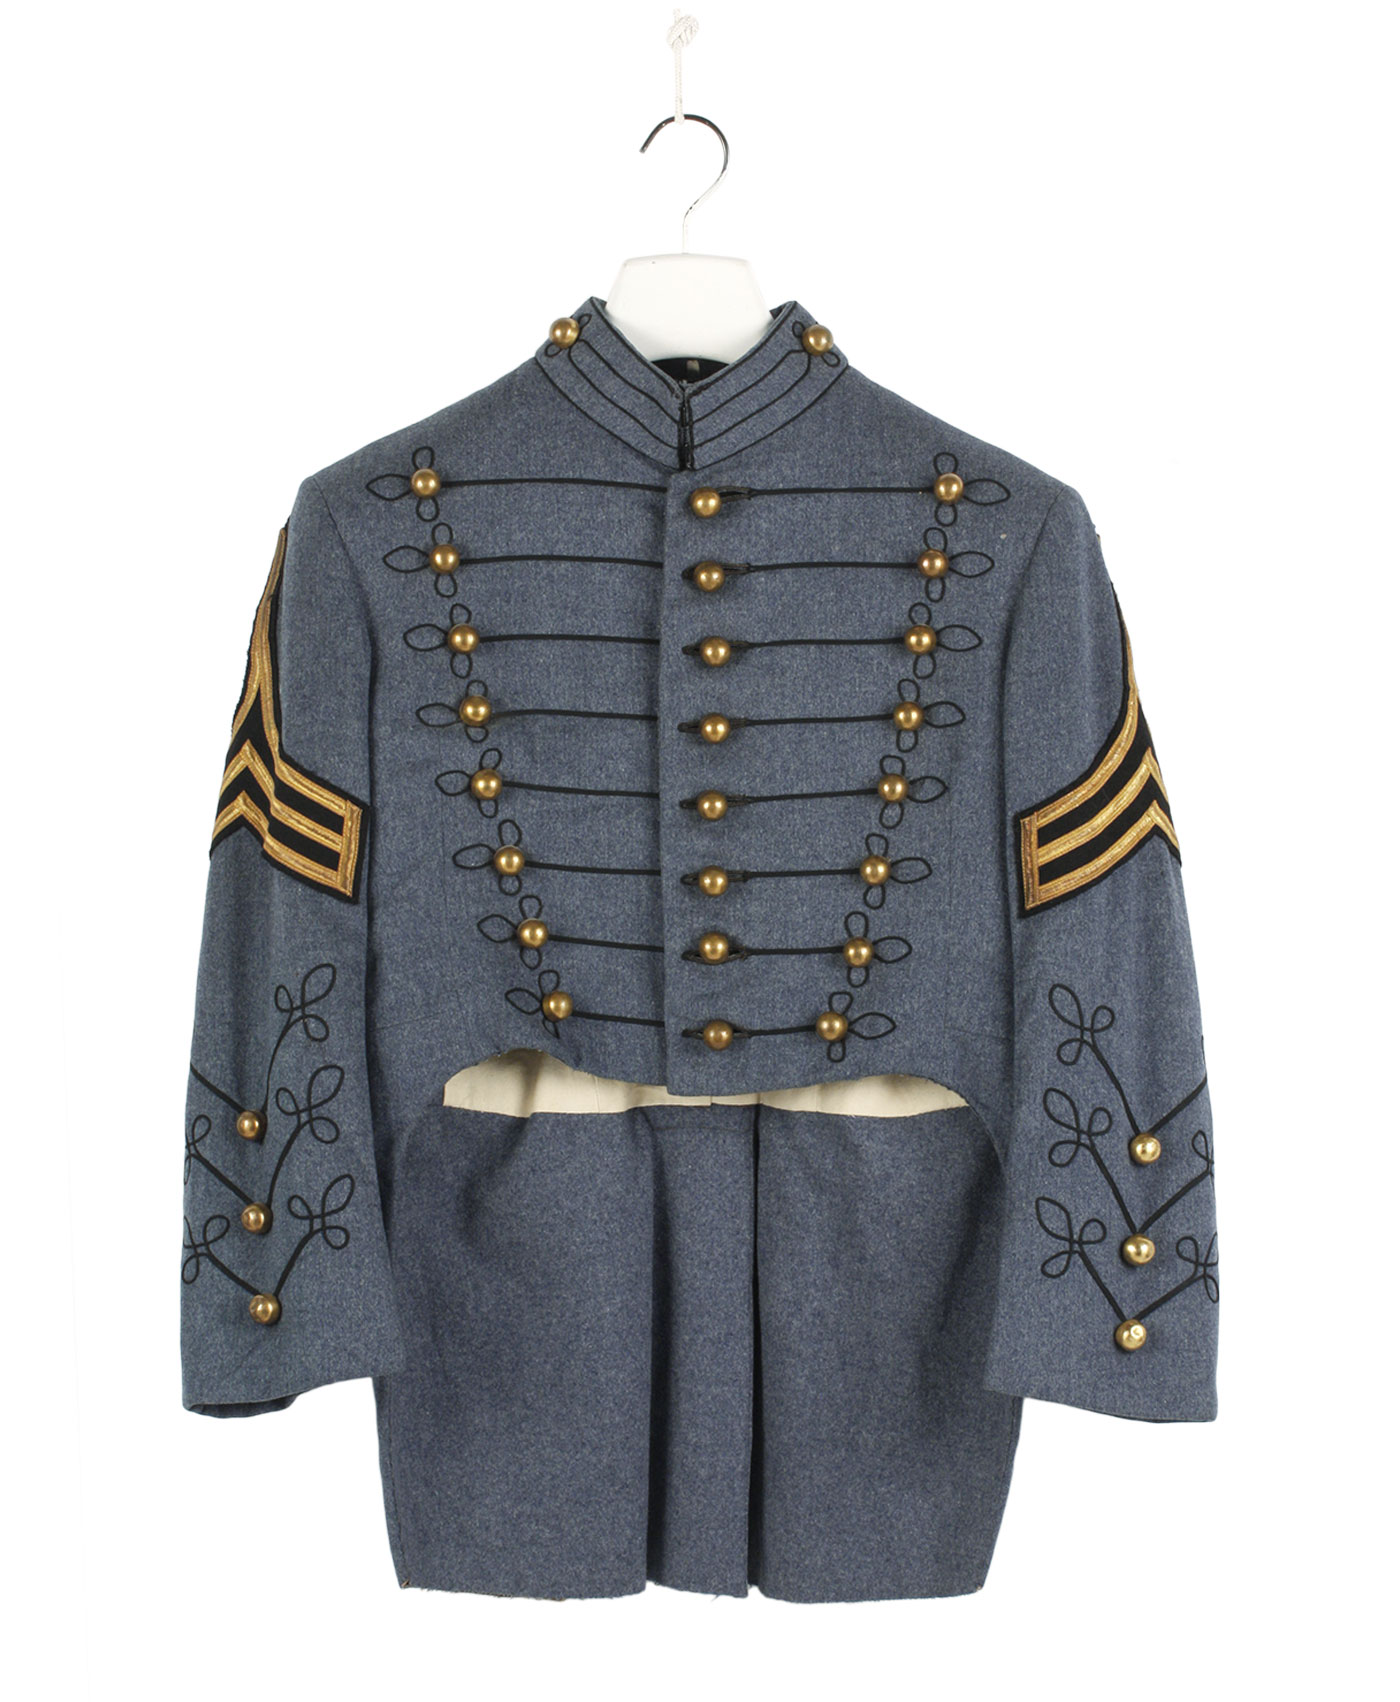 Rare Cadet U.S. Military Uniform ’40/50s